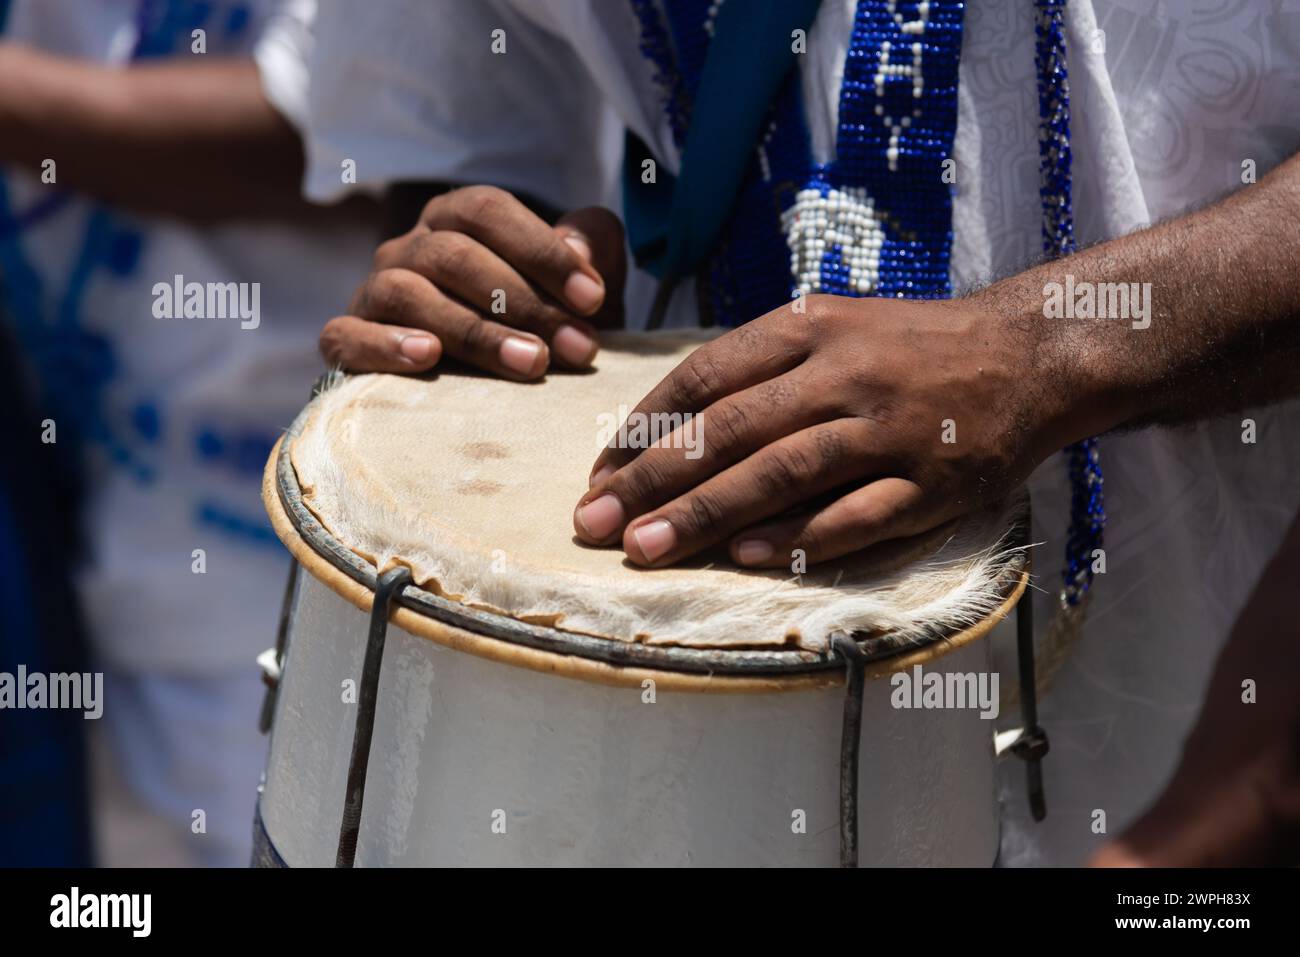 Les mains du percussionniste reposent sur l'atabaque. Musique africaine. Banque D'Images